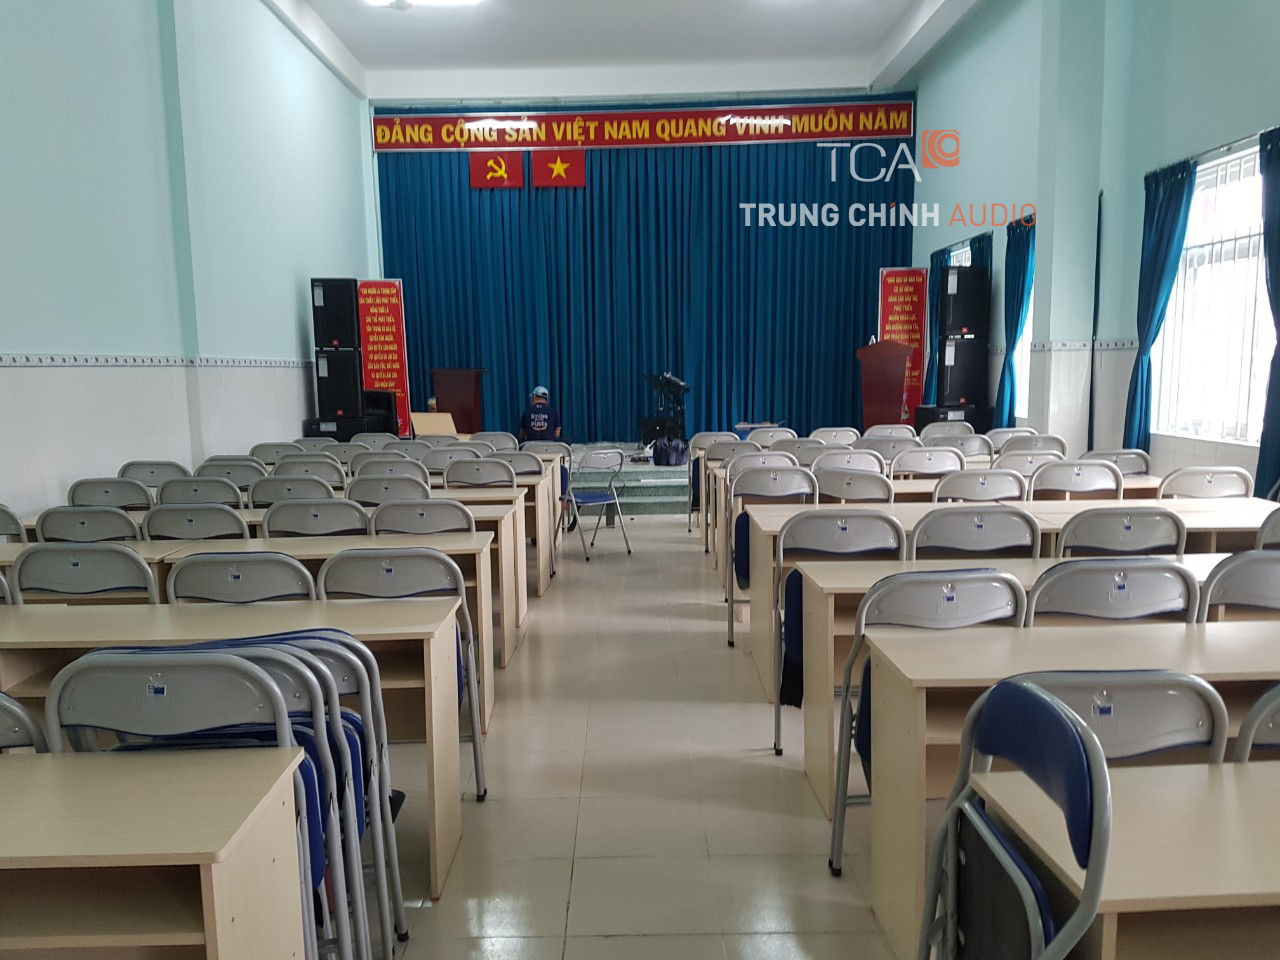 Âm thanh hội trường sân khấu, hệ thống thông báo trường học Tân Phú Trung 1 HCM